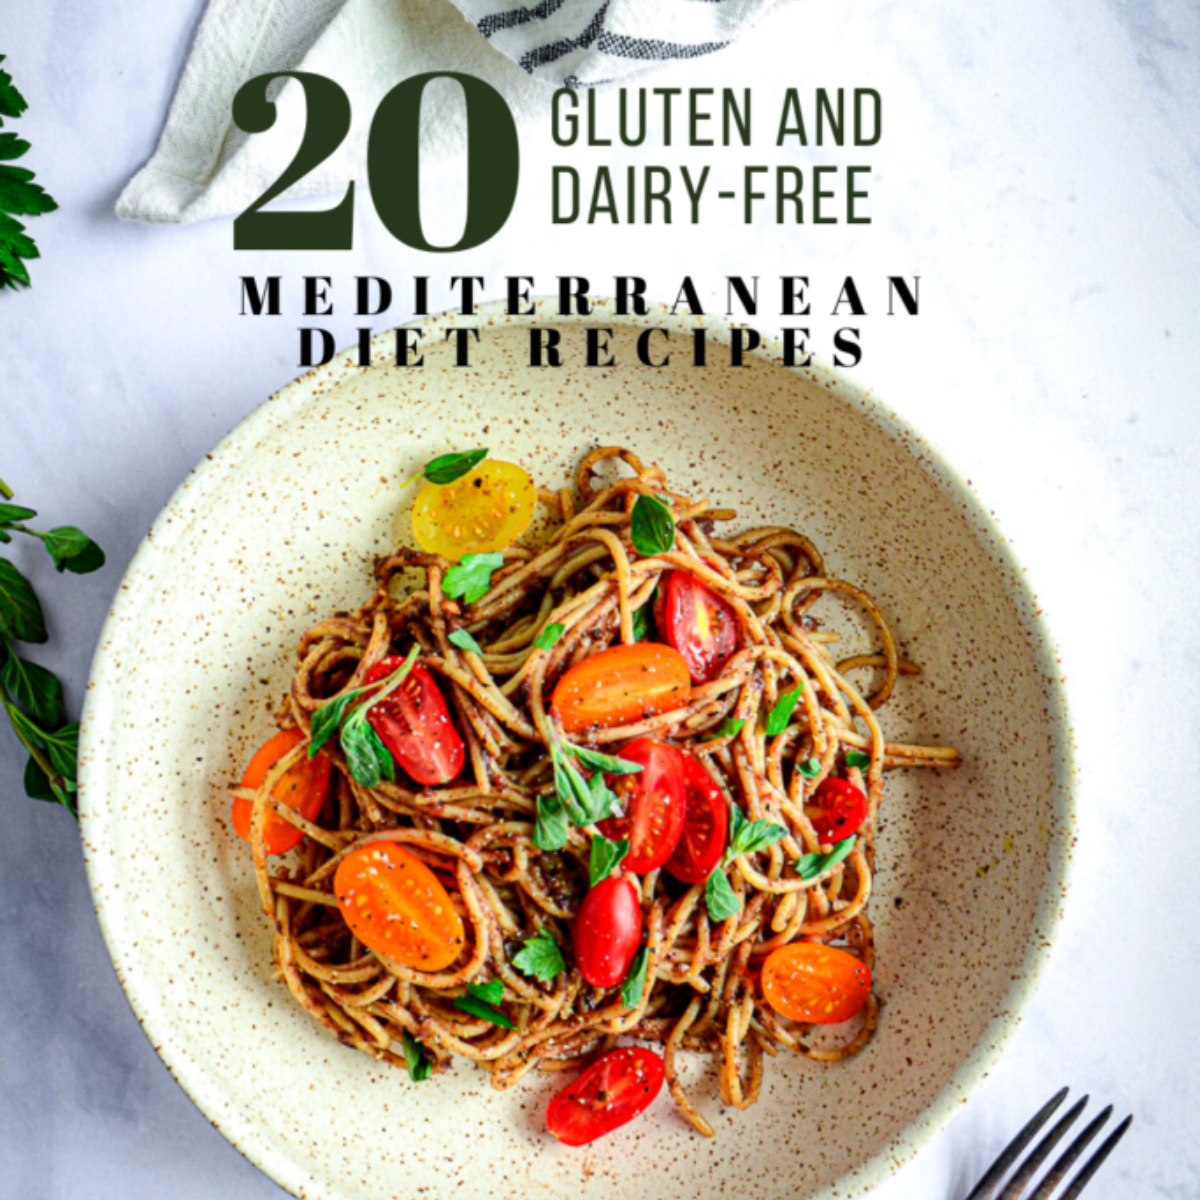 gluten free diet recipes